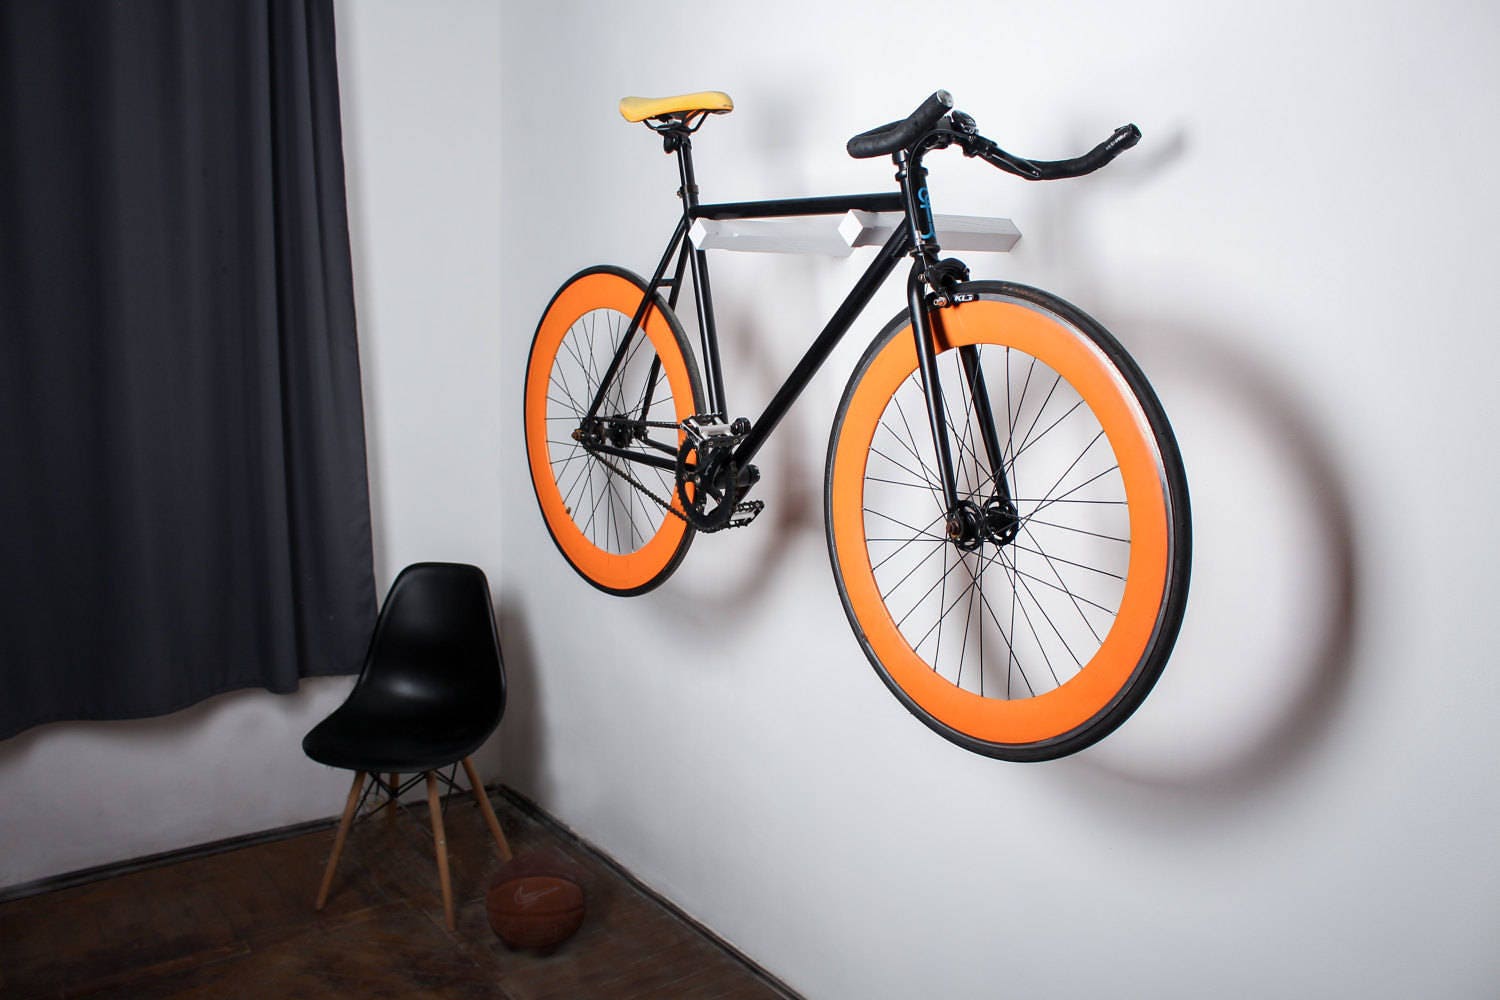 Wall Bike Hooks / Wooden Rack for Bike Storage / White Bike Holder 